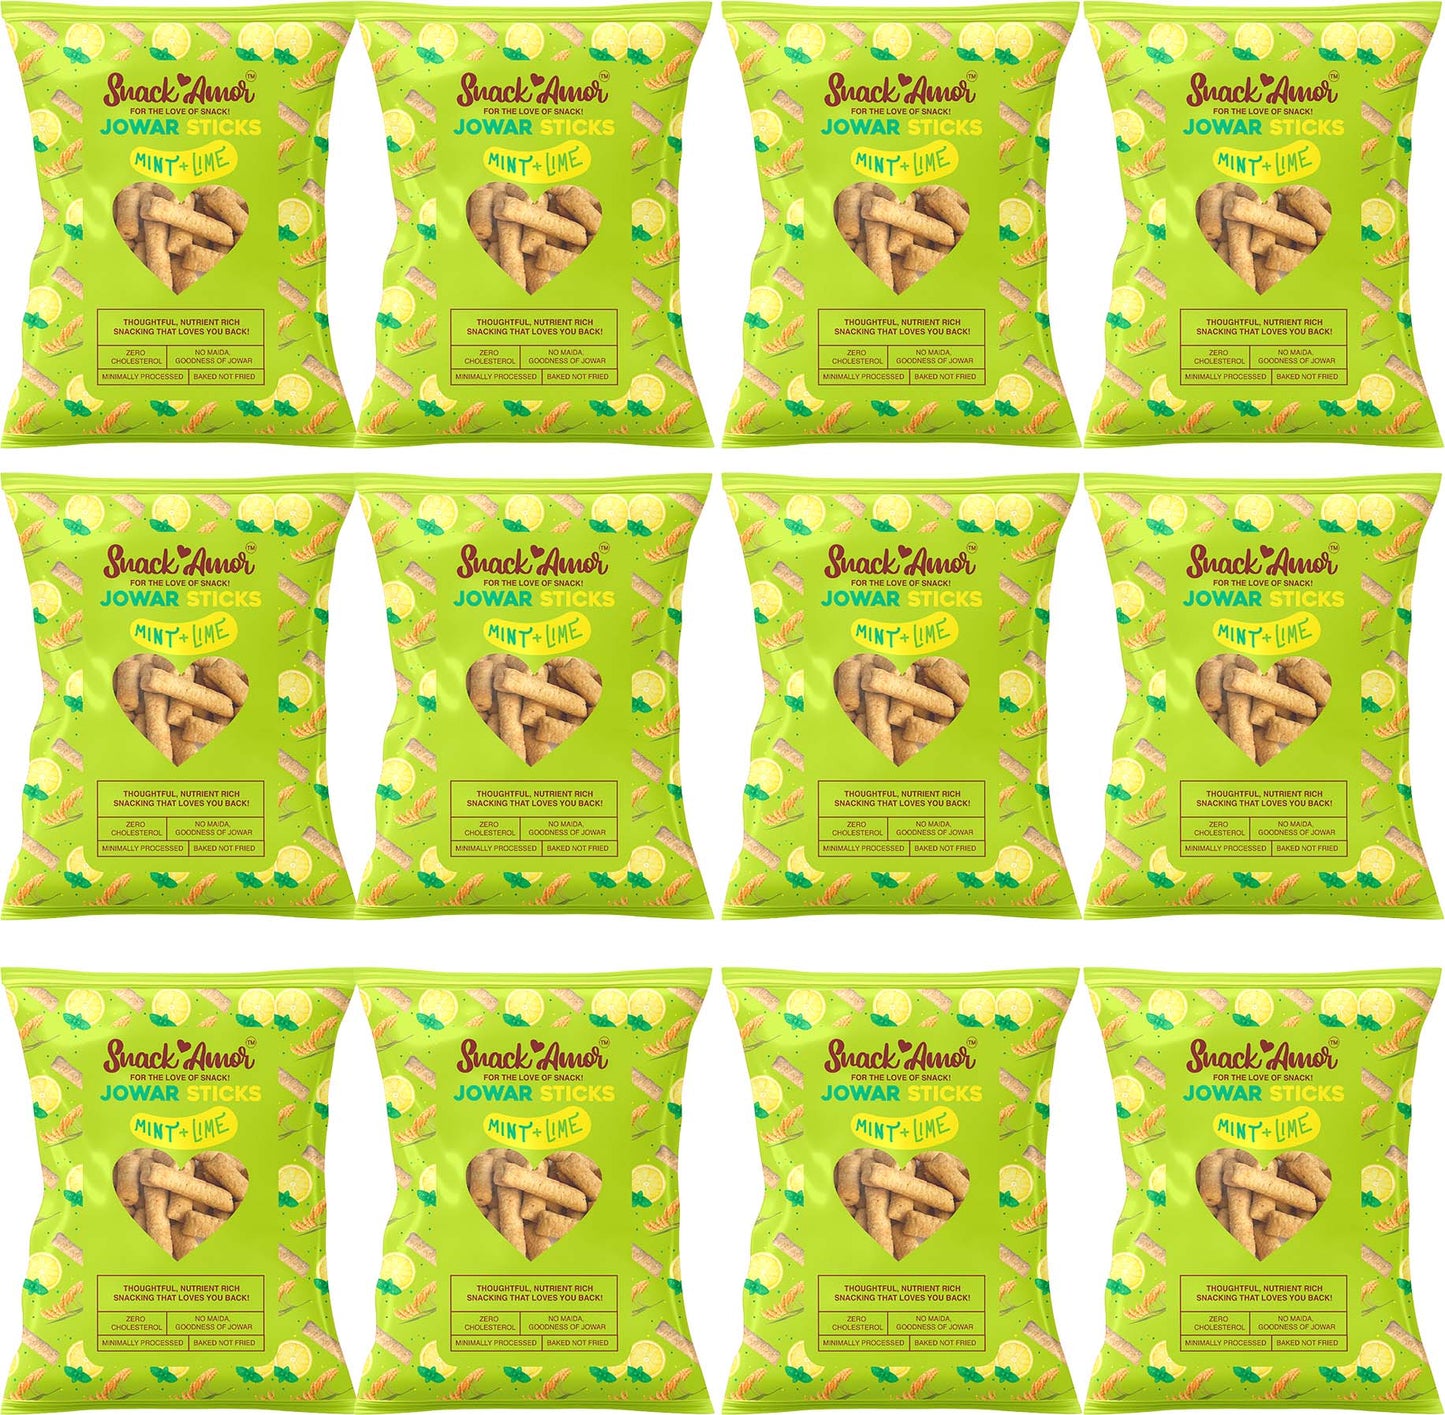 Jowar Sticks Mint & Lime Value Pack of 12 - Snack Amor